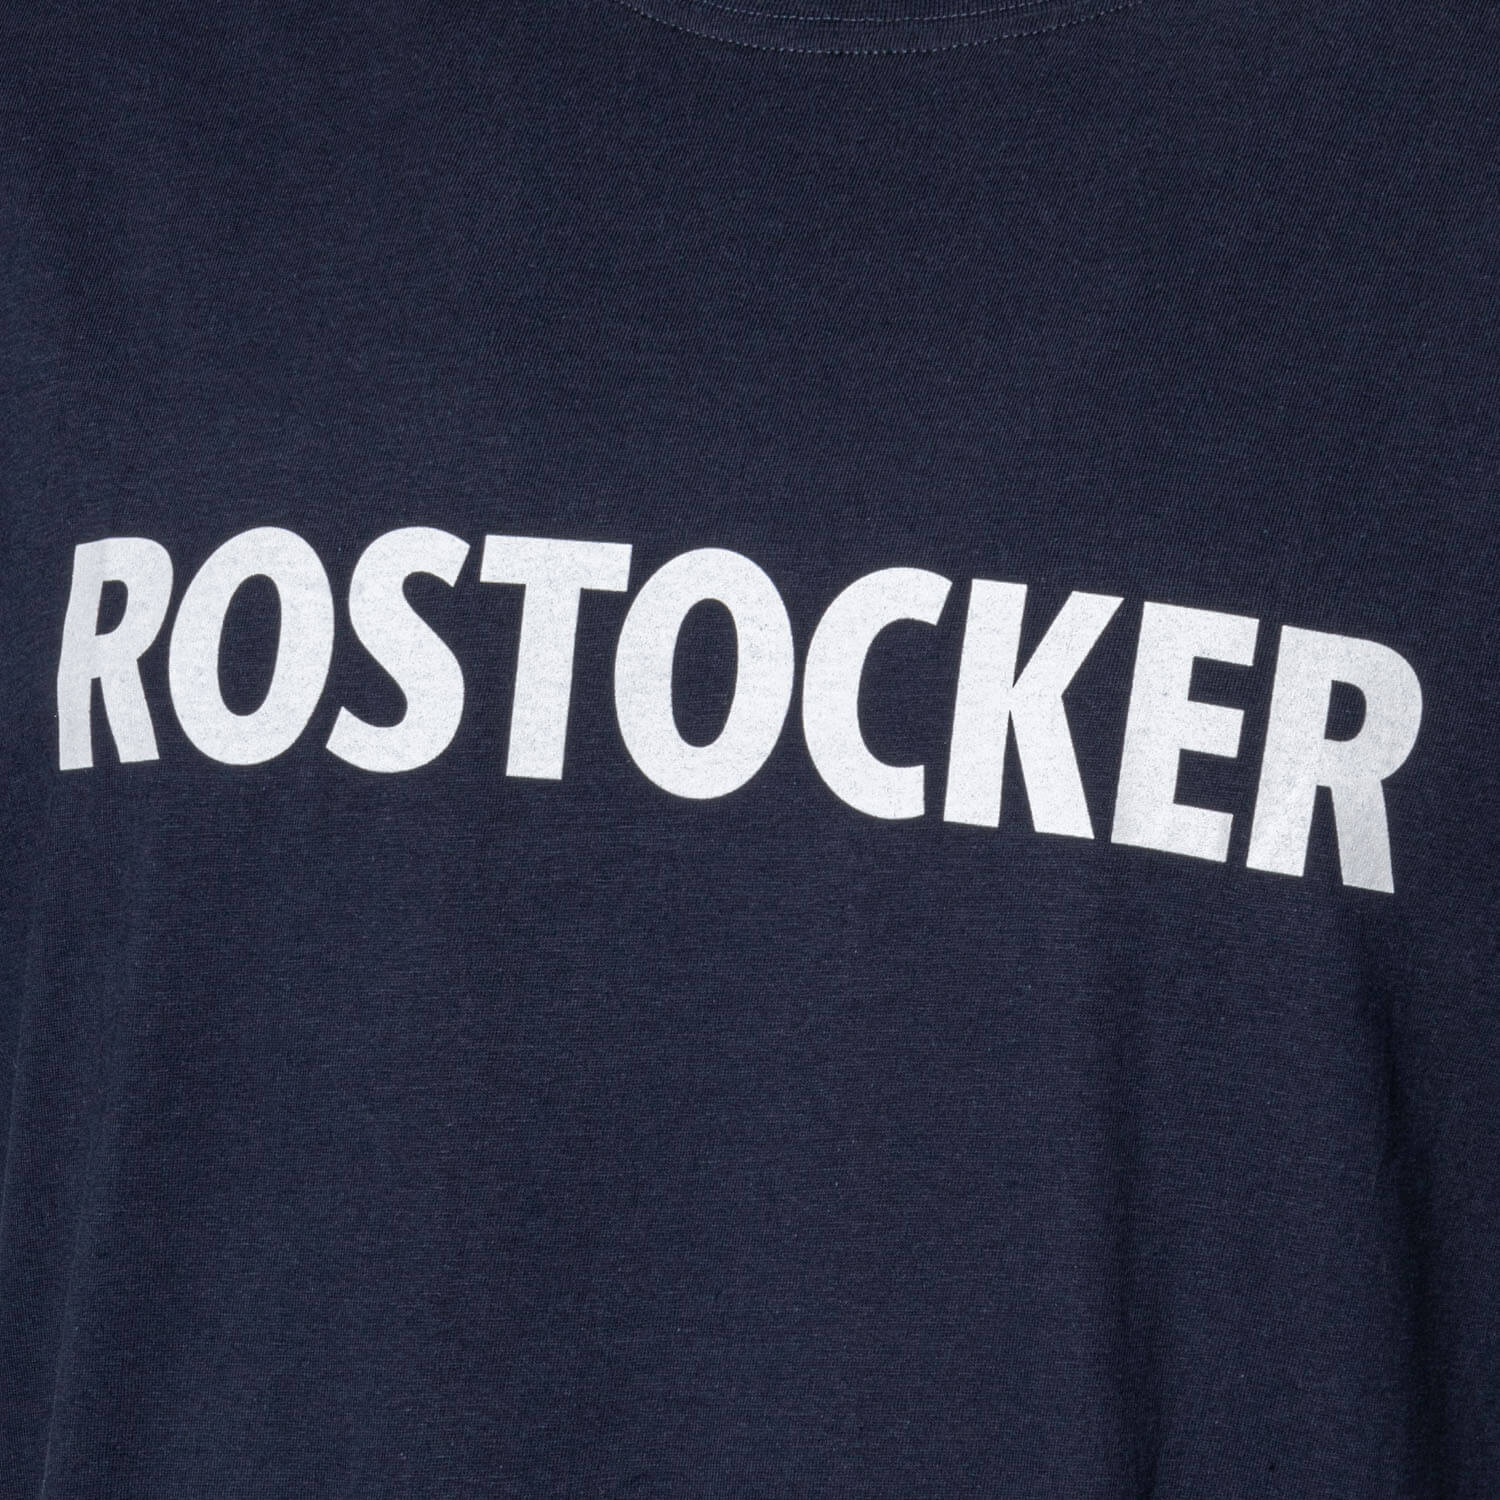 Rostocker Herren T-Shirt HANSE SAIL 2023, Gr. S